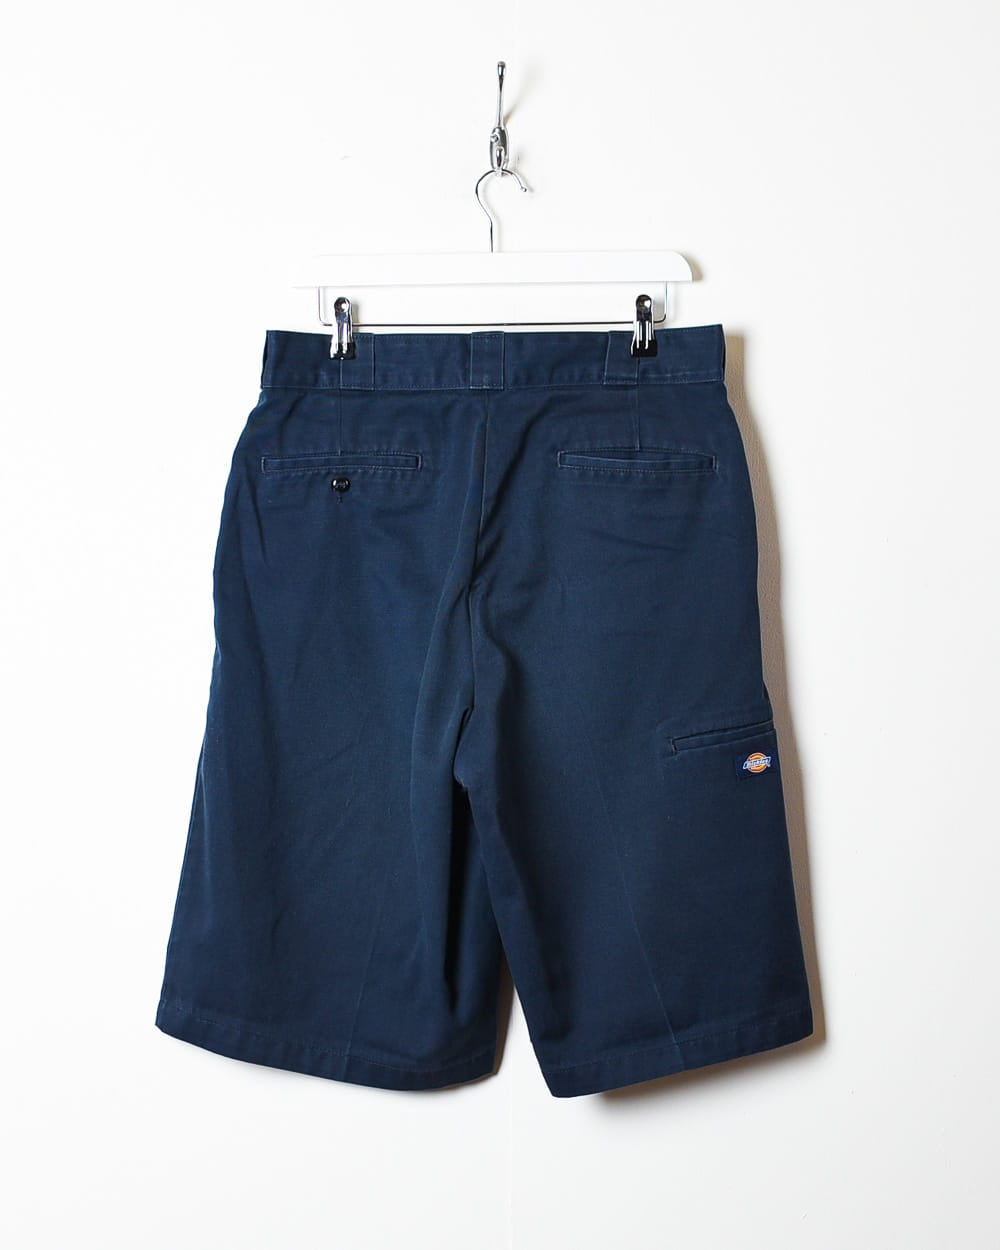 Navy Dickies Chino Shorts - W32